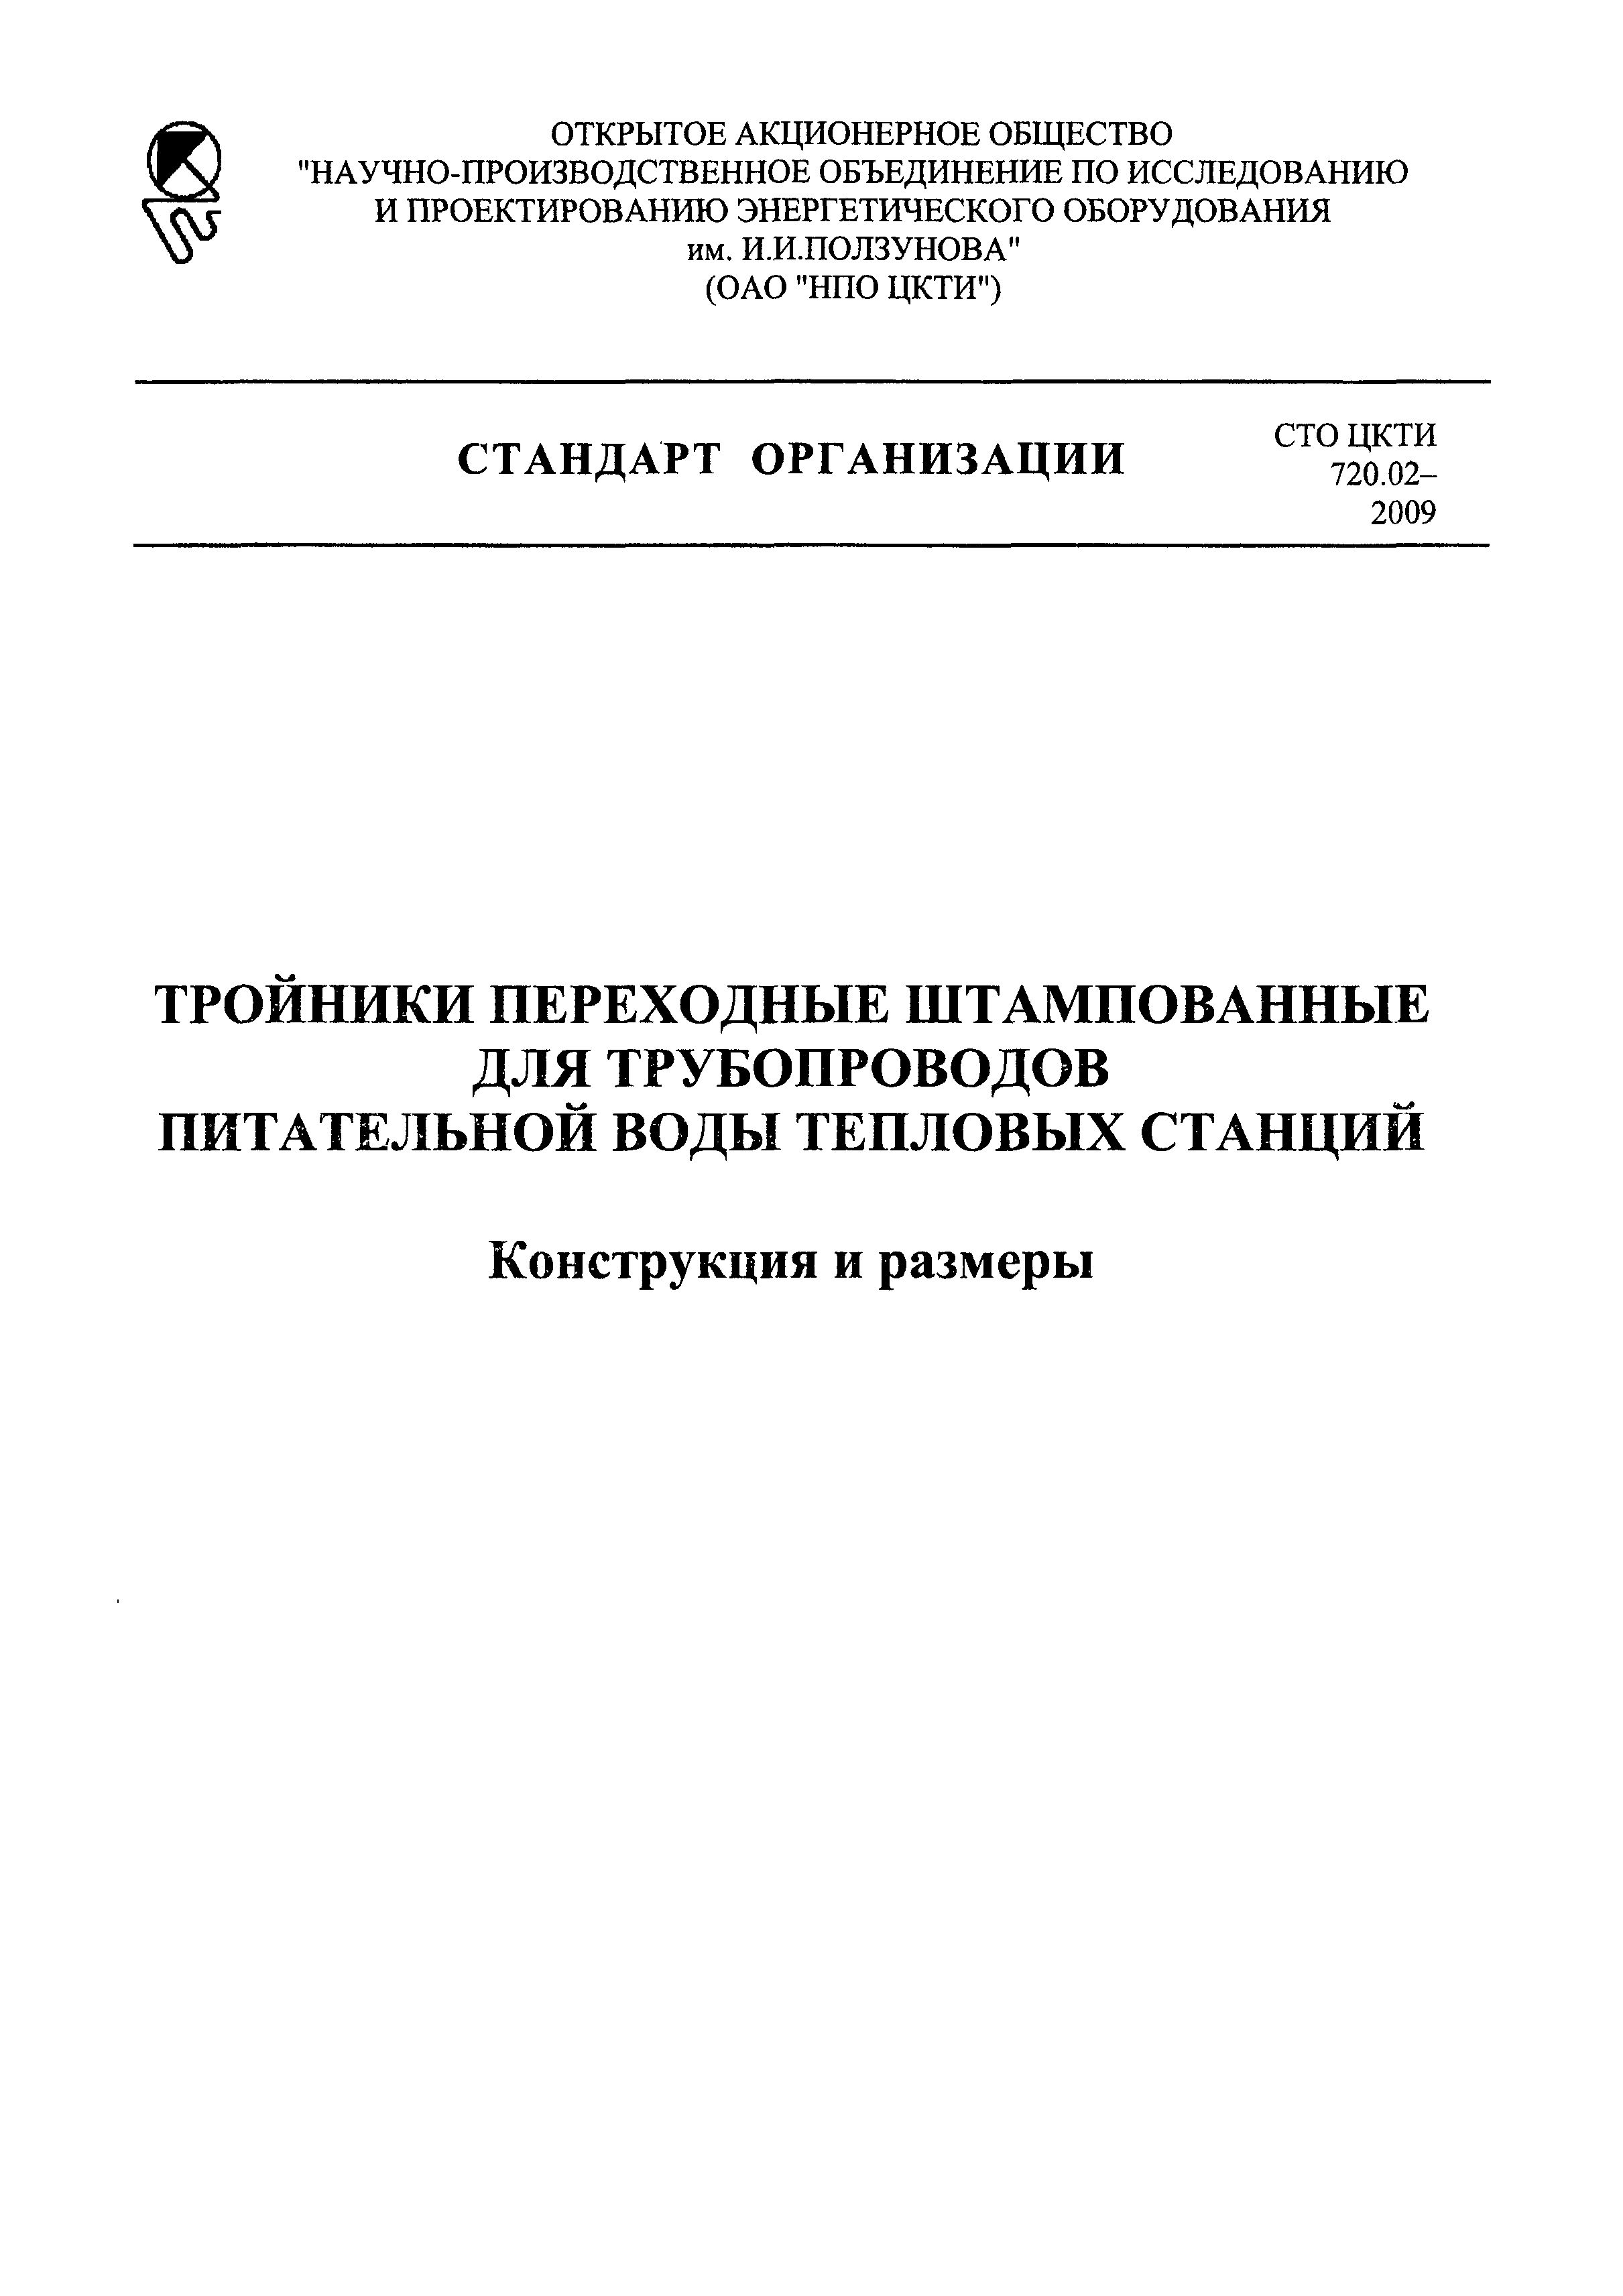 СТО ЦКТИ 720.02-2009